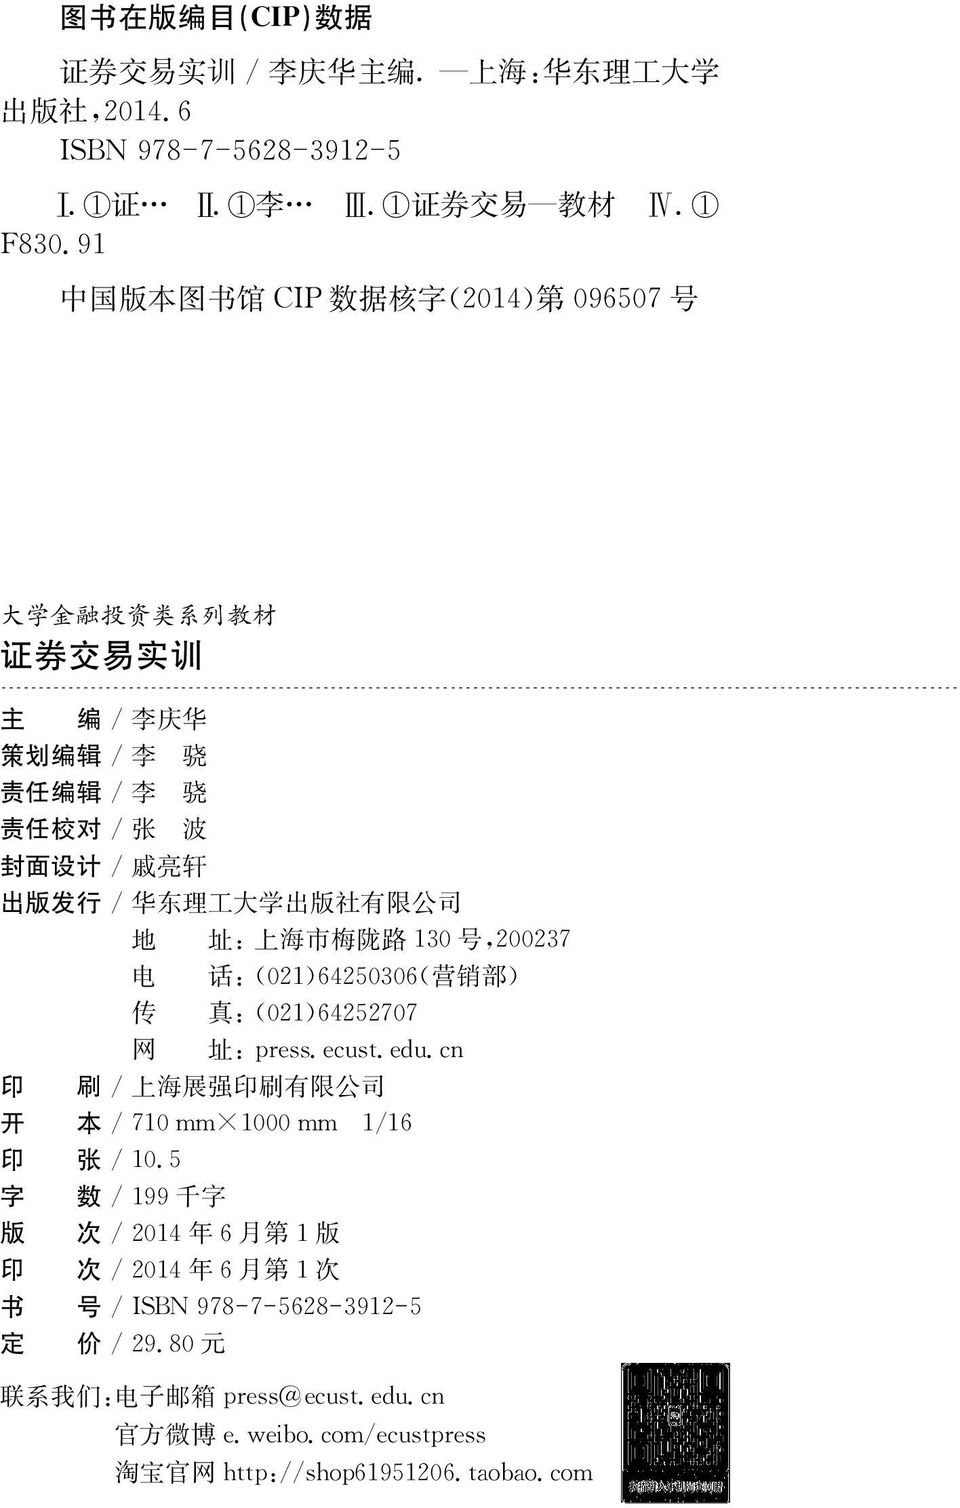 公 司 地 址 : 上 海 市 梅 陇 路 130 号,20237 电 话 :(021)64250306( 营 销 部 ) 传 真 :(021)64252707 网 址 :pres.ecust.edu.cn 印 刷 / 上 海 展 强 印 刷 有 限 公 司 开 本 /710m 10m1/16 印 张 /10.